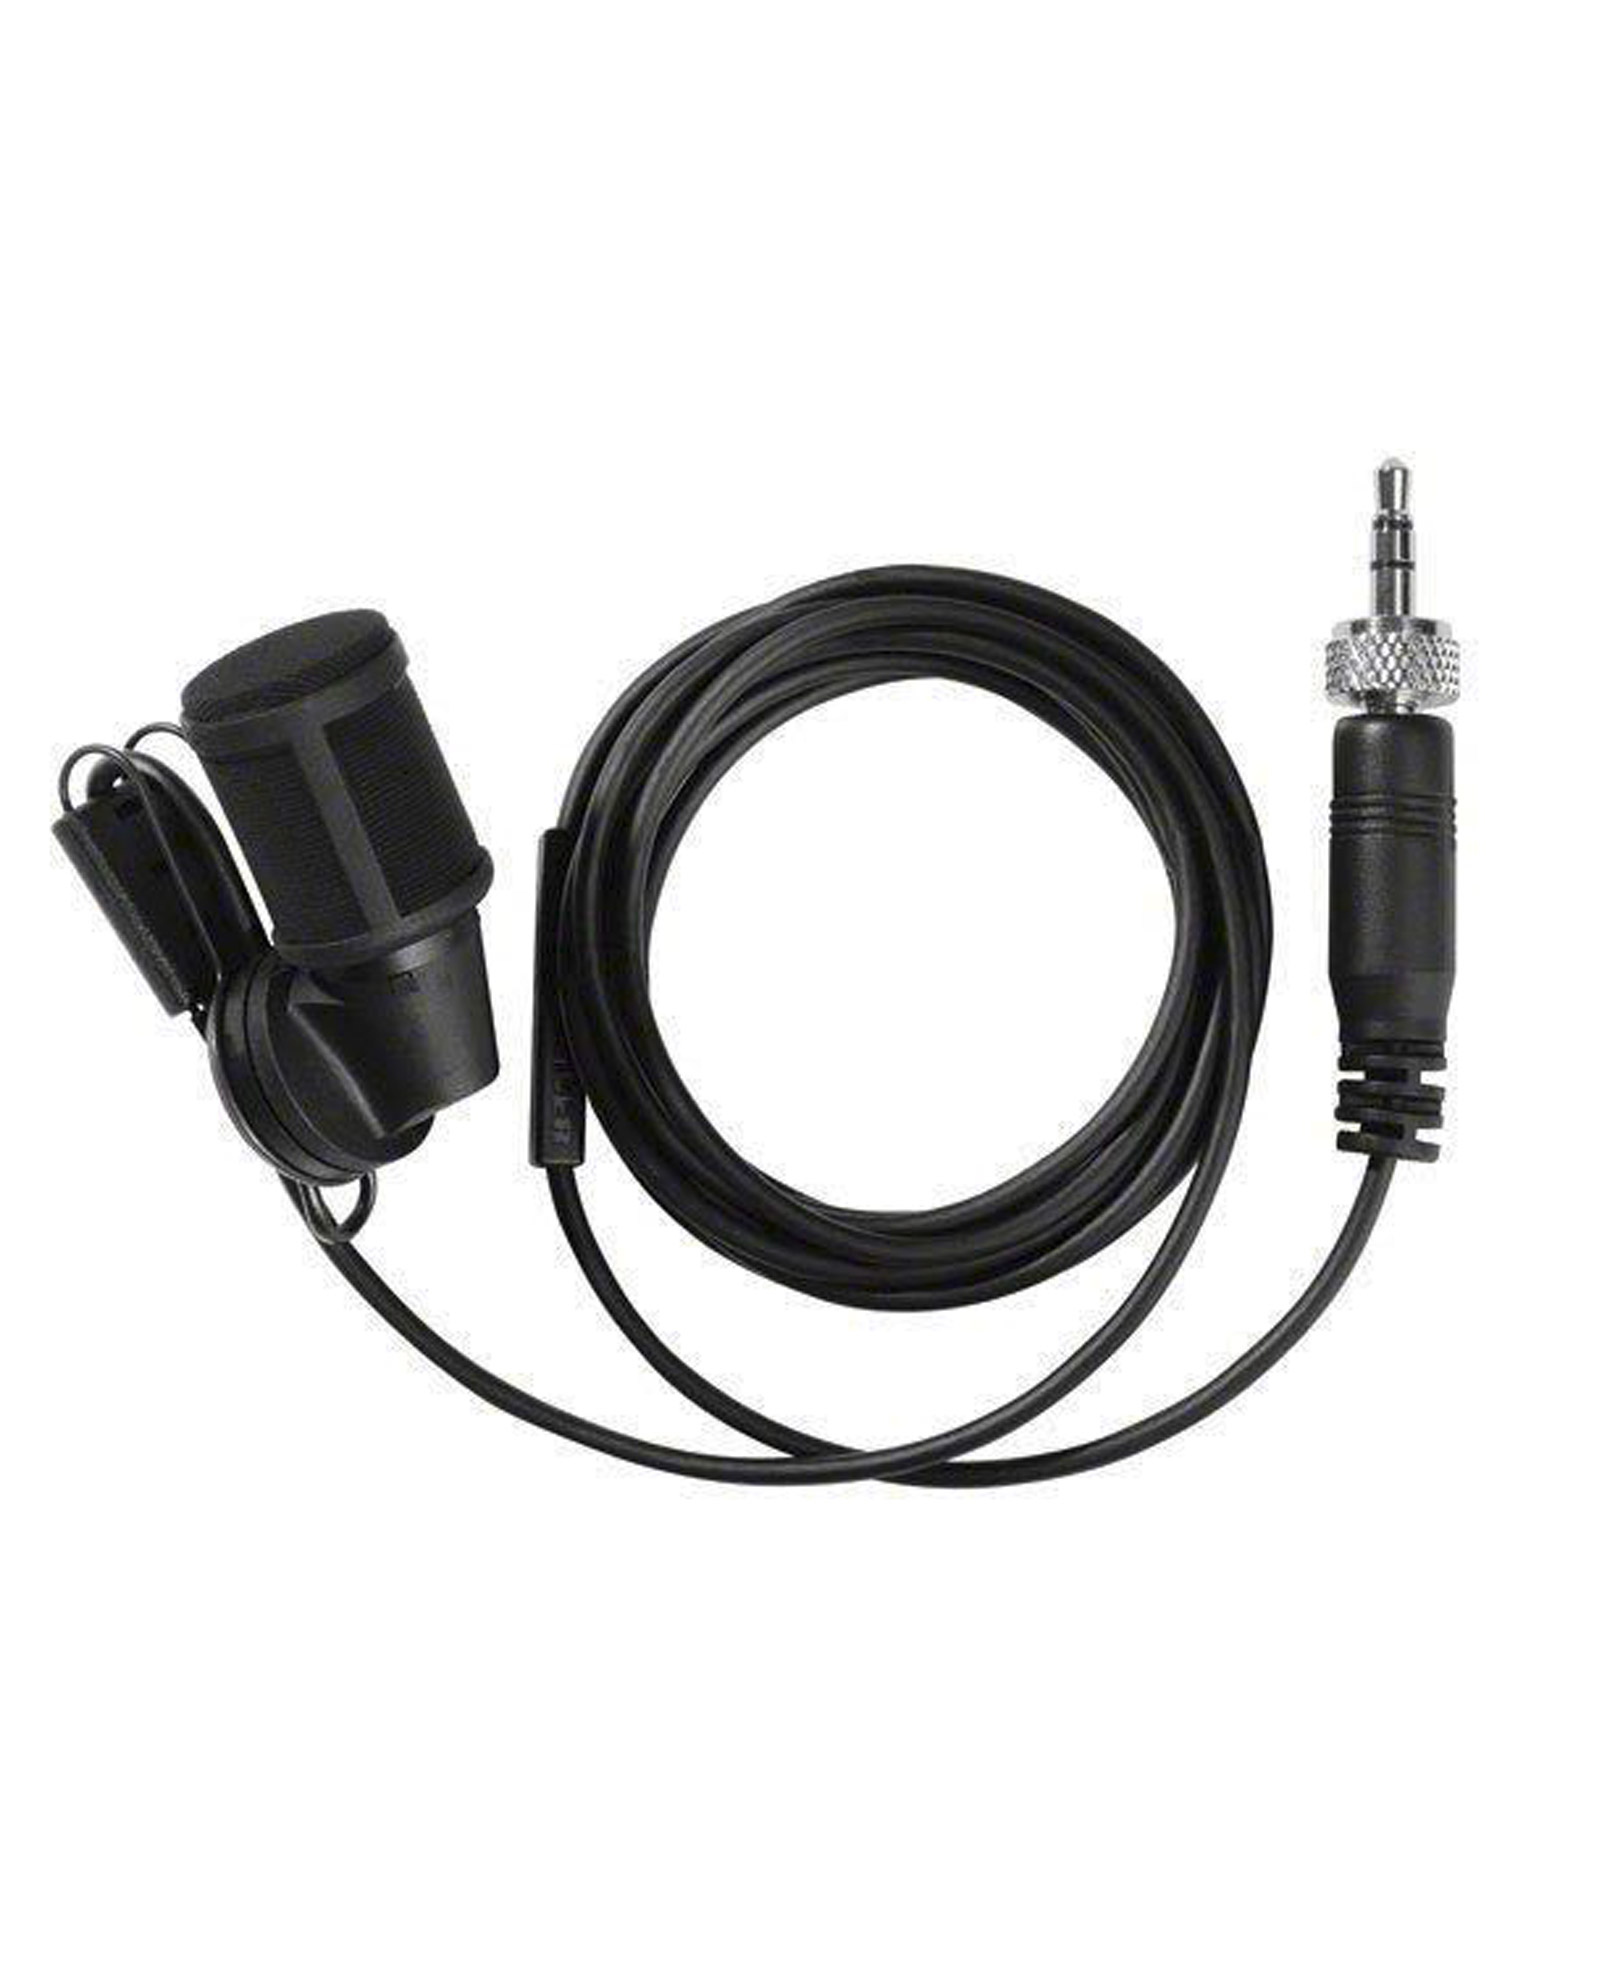 Sennheiser Mke 40 Cardioid Clip On Microphone 2